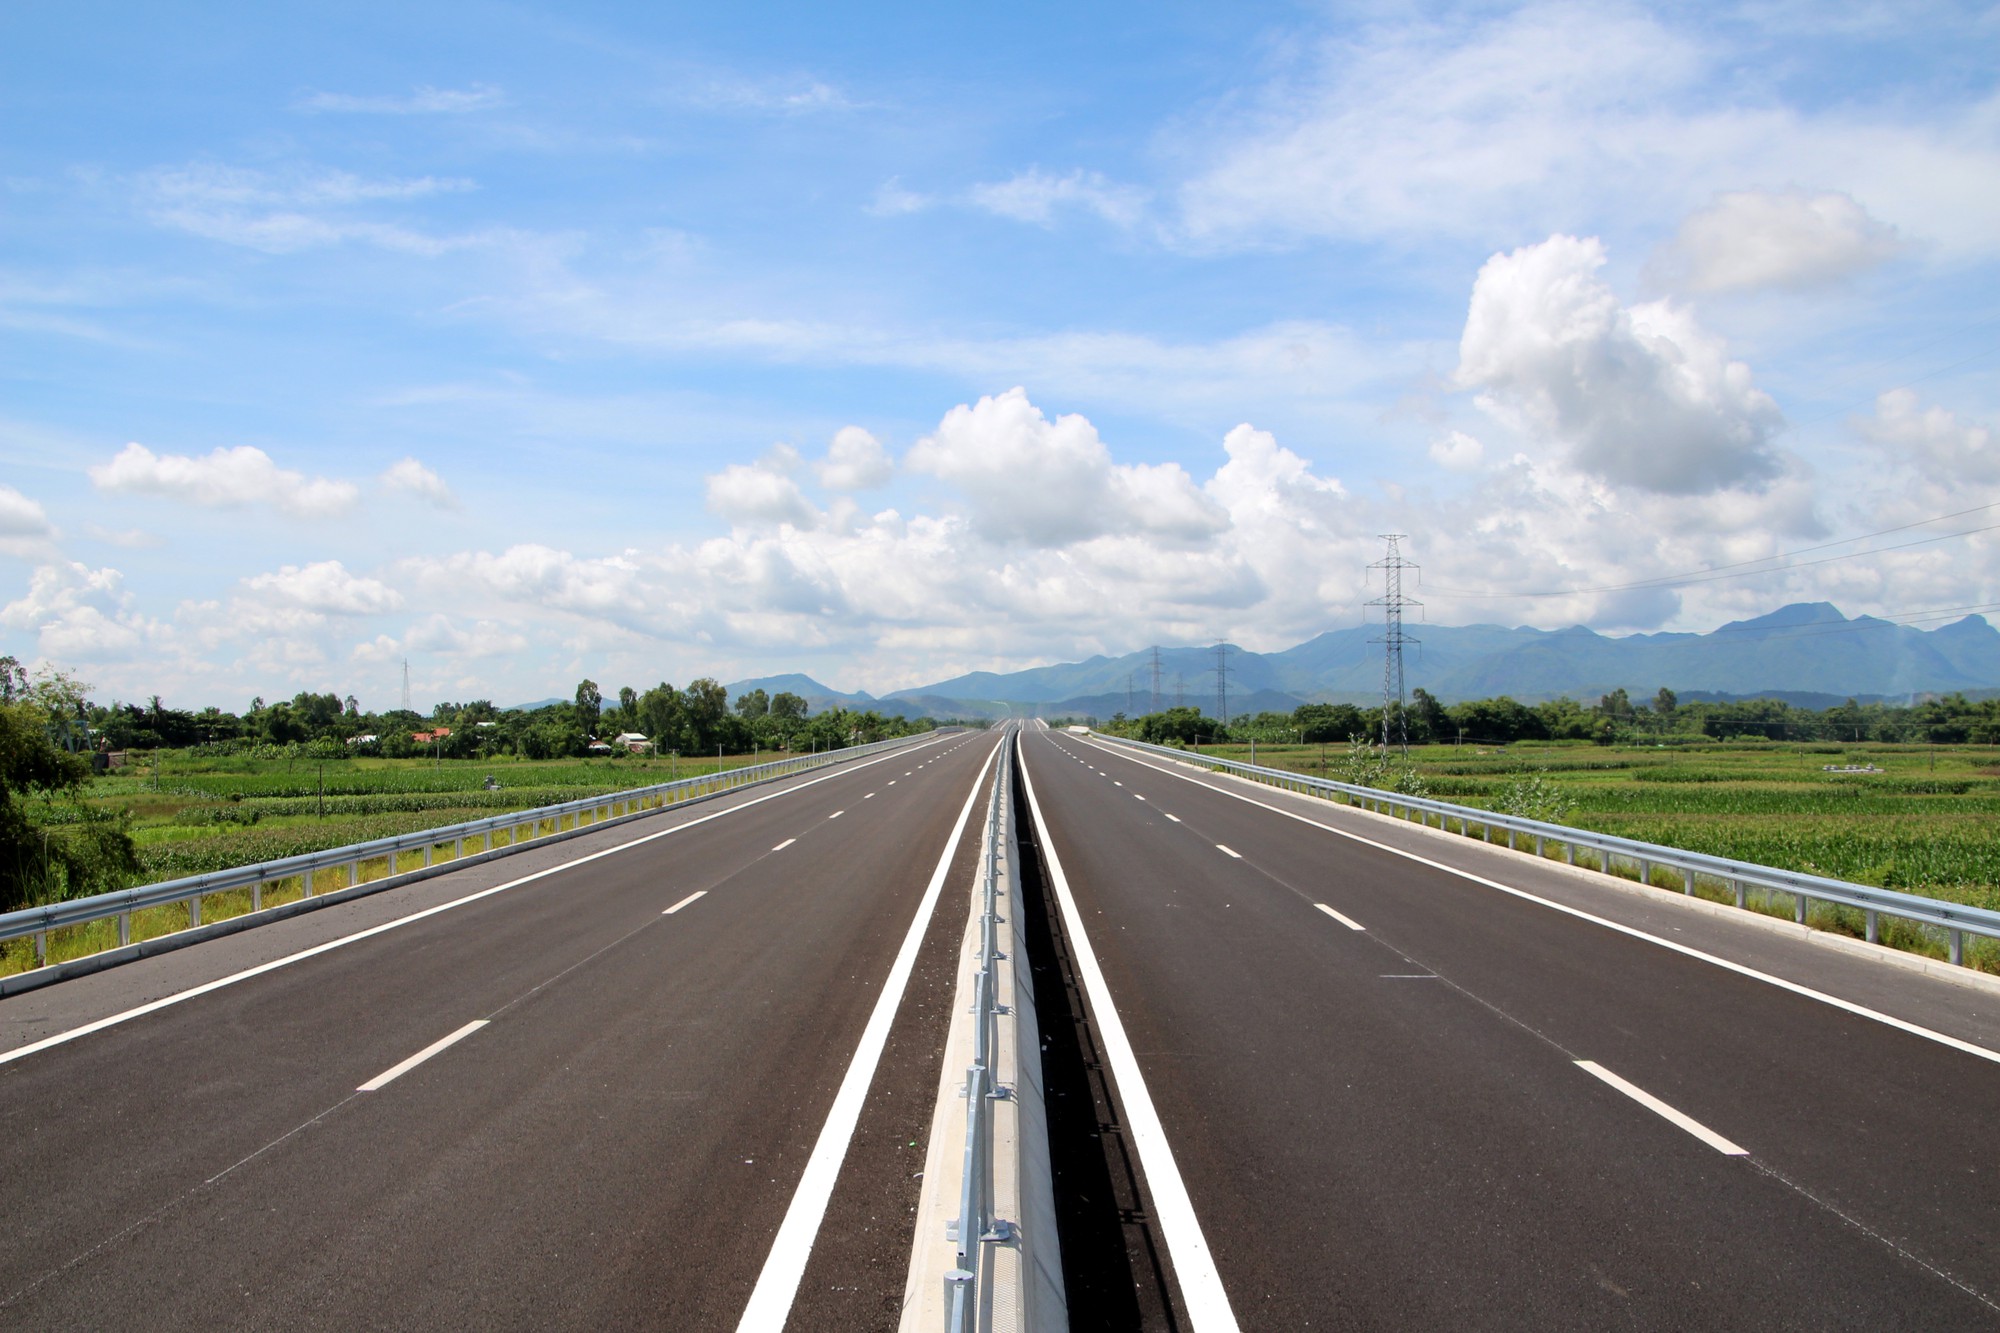 Hiện tuyến chính cao tốc từ Tam Kỳ đến Quảng Ngãi đã hoàn thành nhưng nhiều hạn mục phụ như đường ngang, công chui và một số hạn mục phụ vẫn chưa hoàn thiện